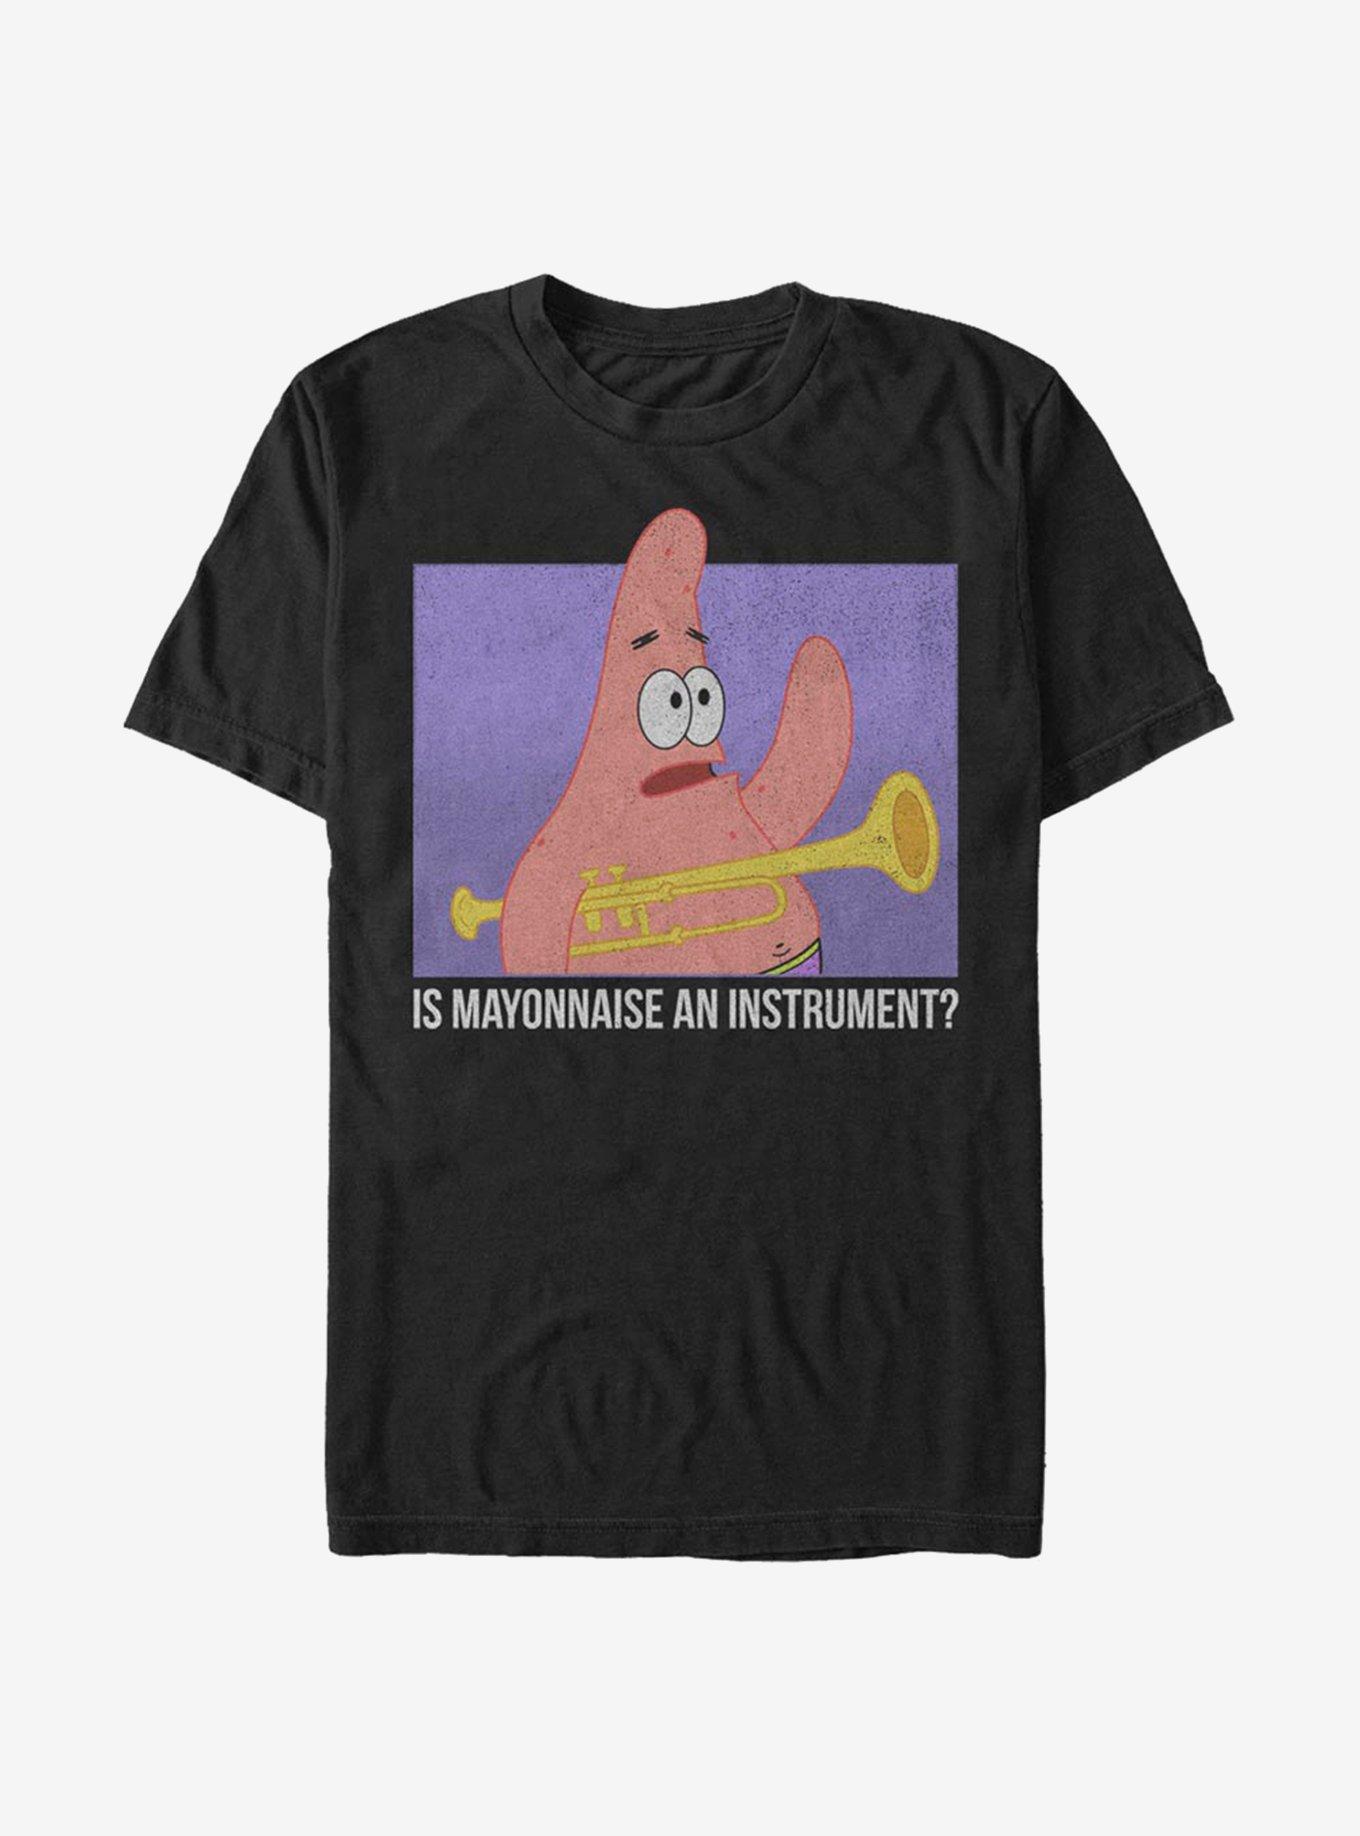 Spongebob Squarepants Mayonnaise T-Shirt, BLACK, hi-res